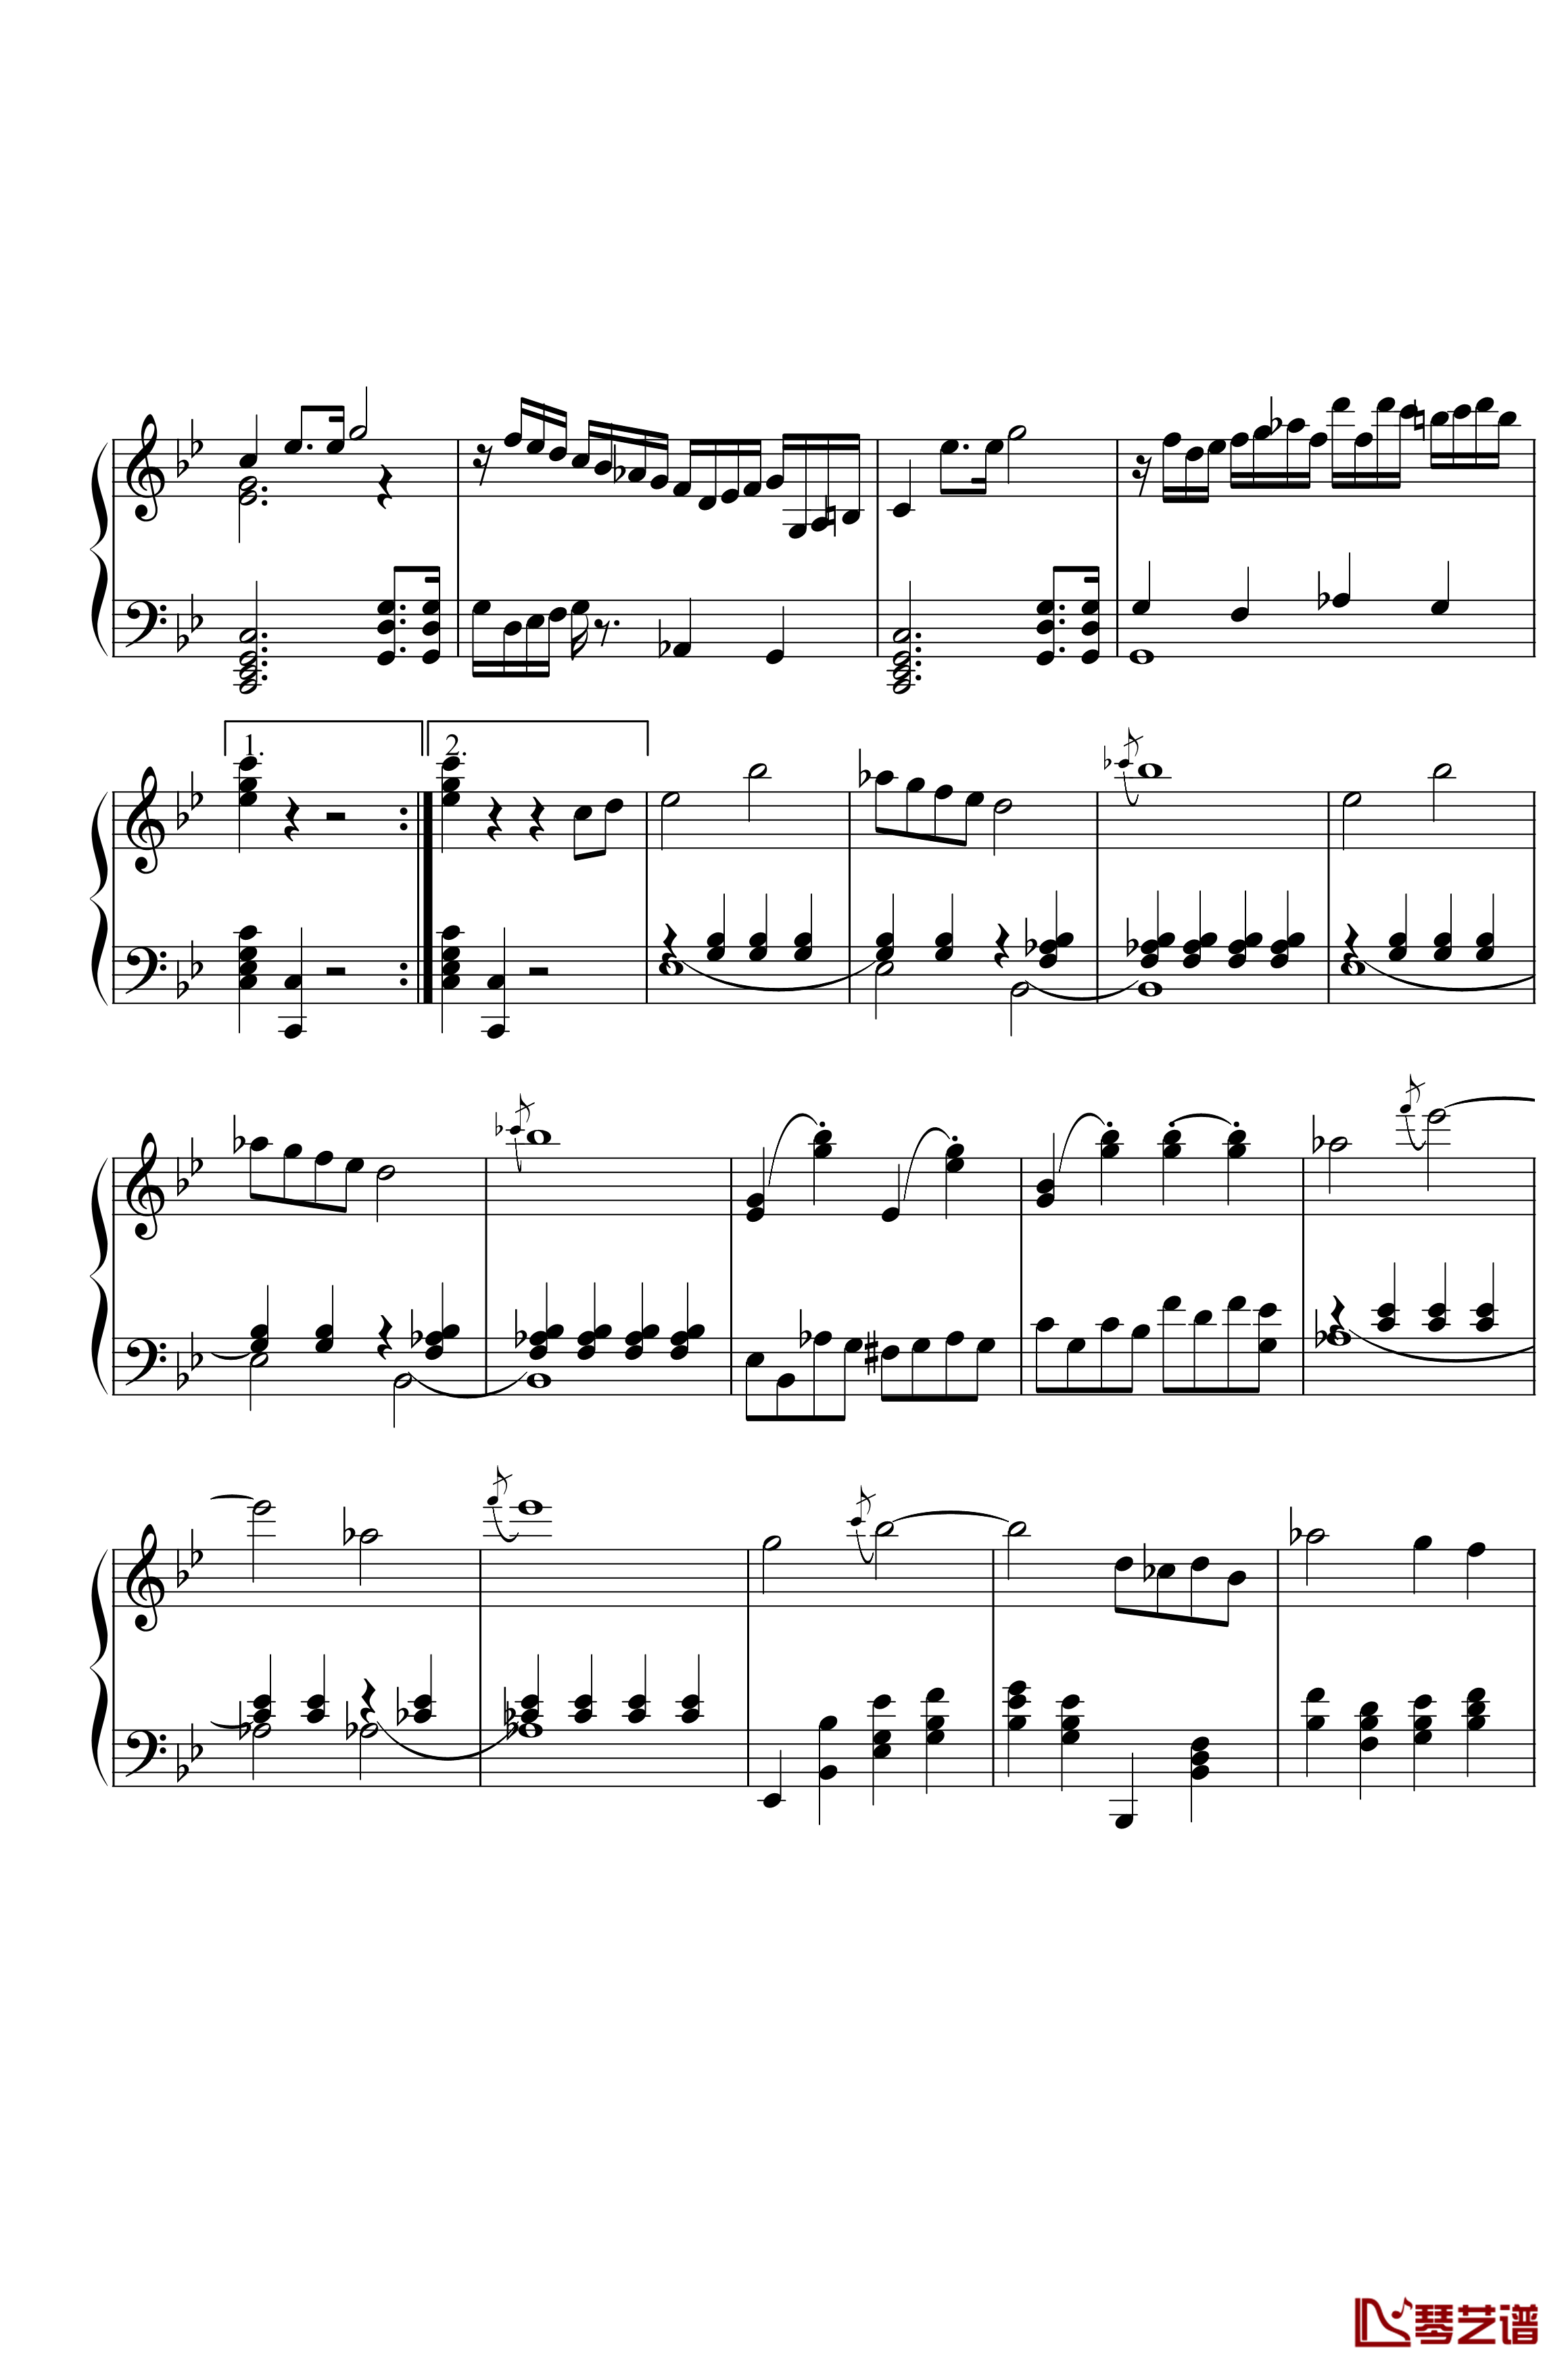 第三钢琴奏鸣曲第一乐章钢琴谱-nzh19343